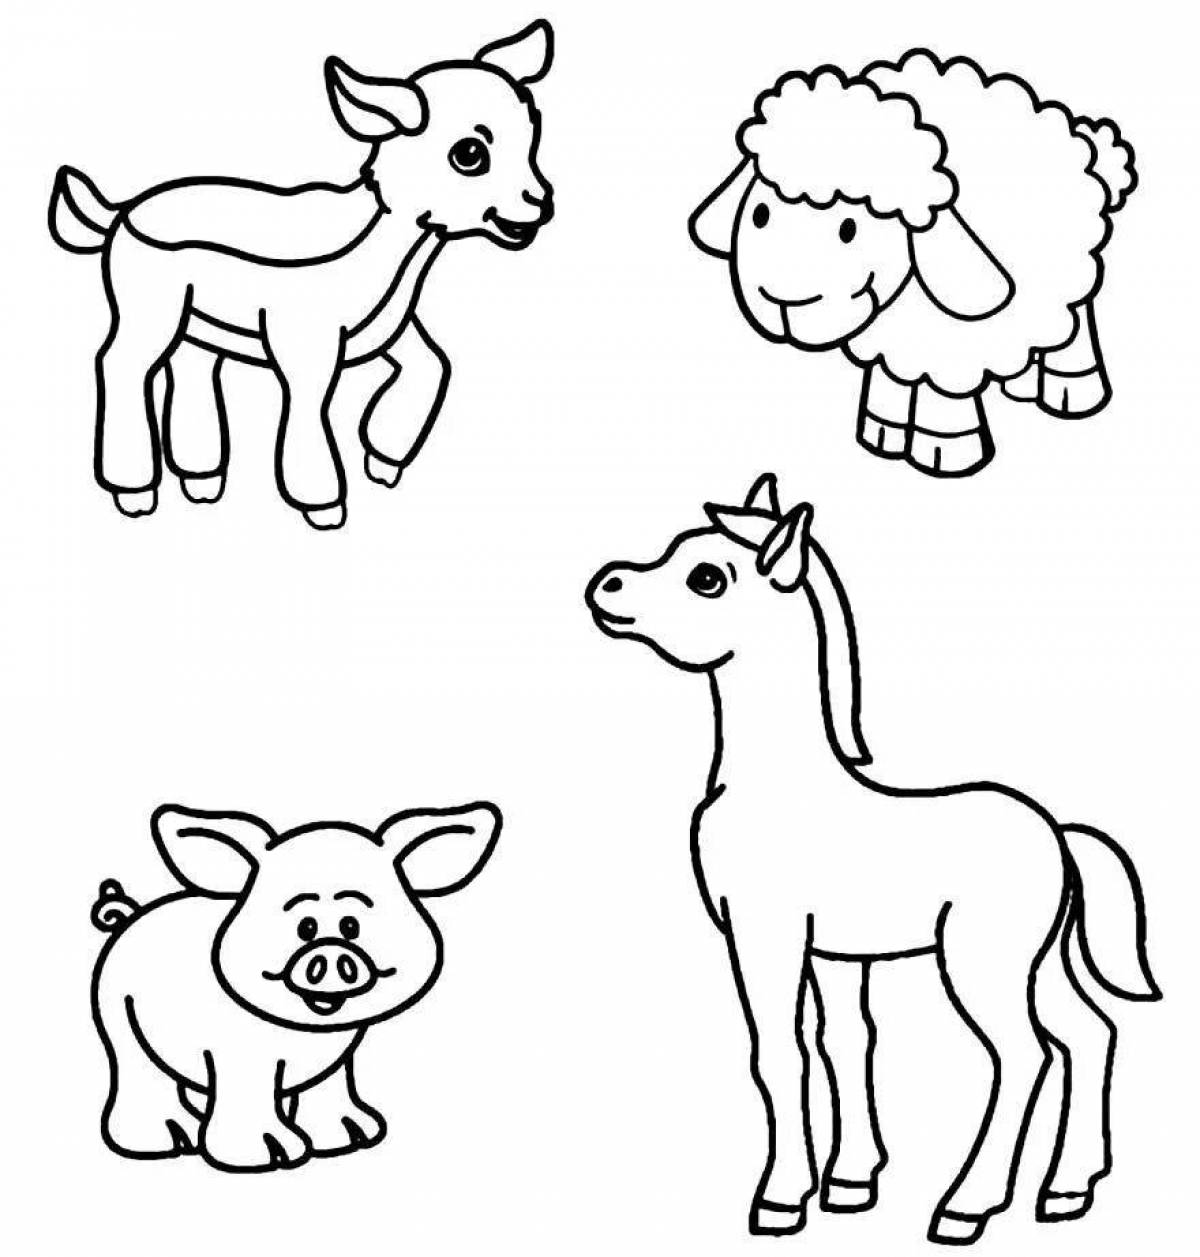 Разноцветная раскраска для детей с животными 3-4 лет